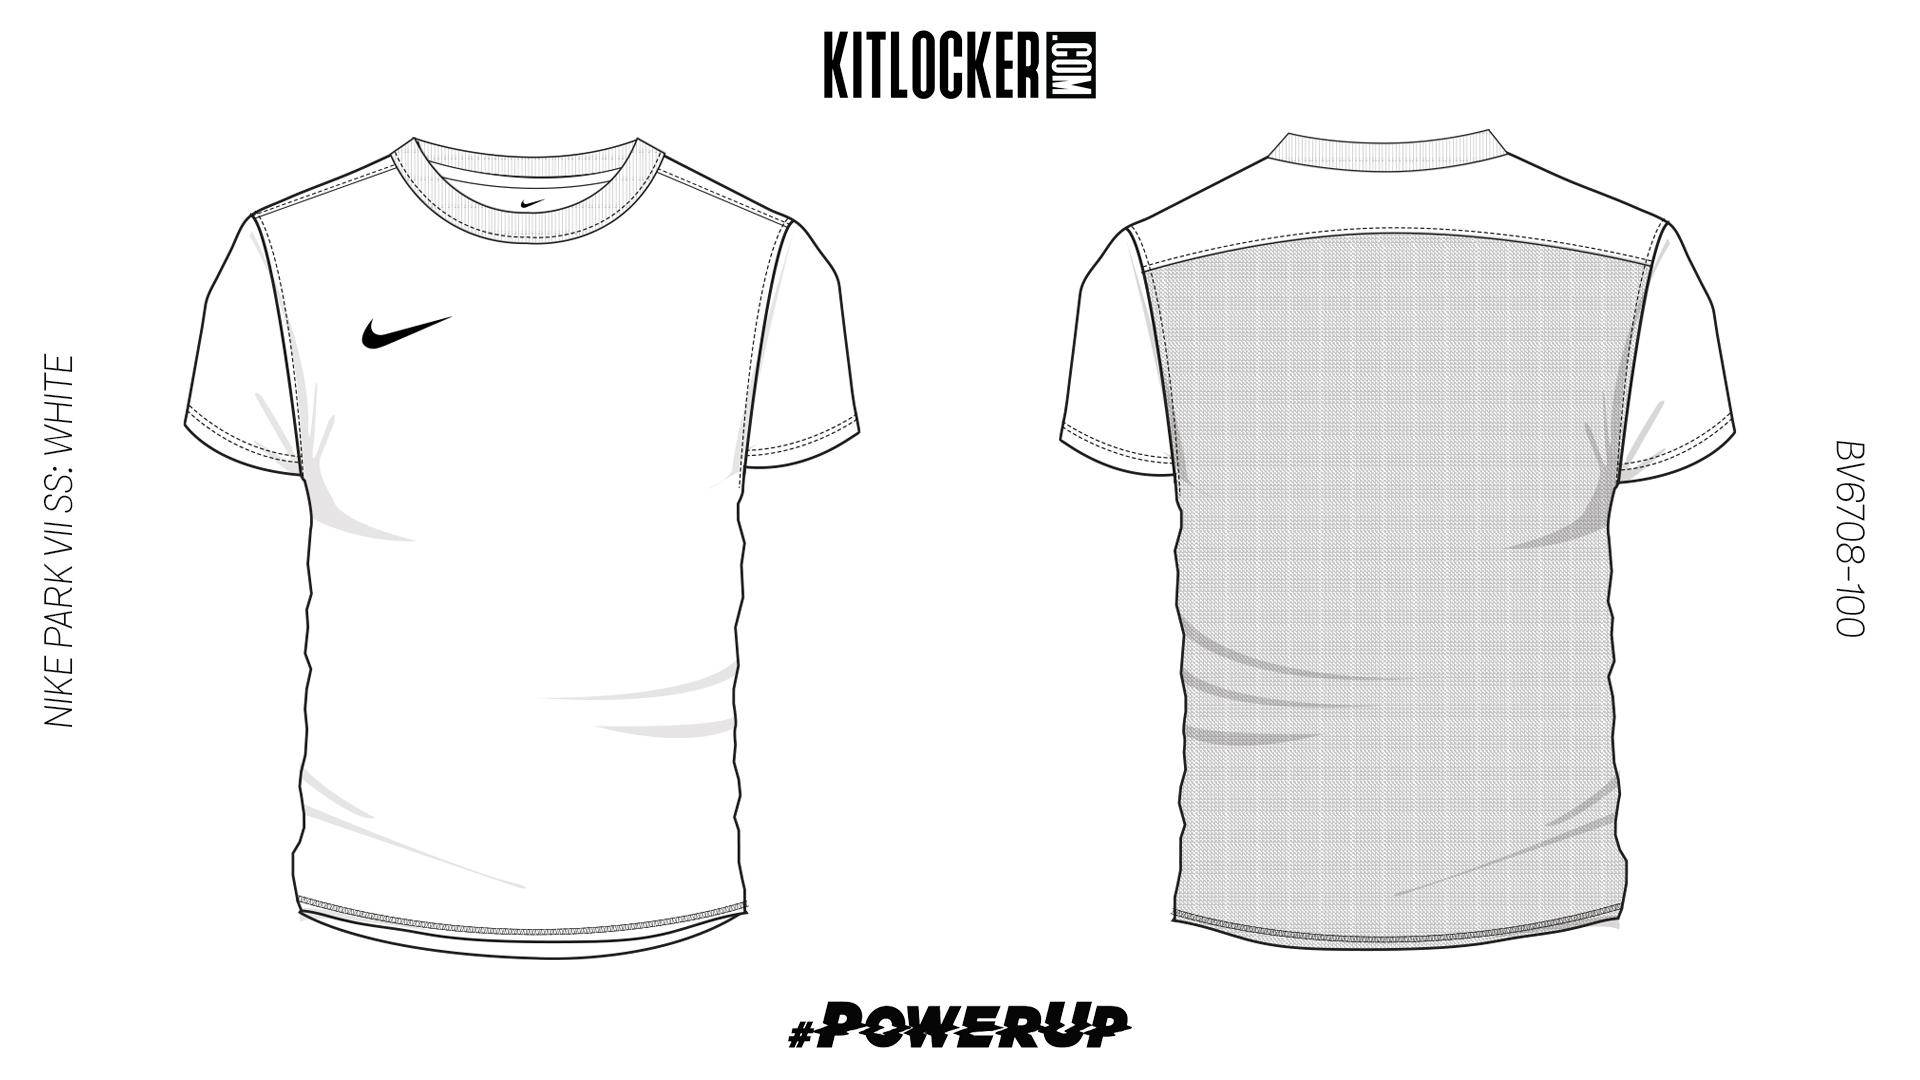 Design Your Own #PowerUp Kit - Kitlocker.com Blog